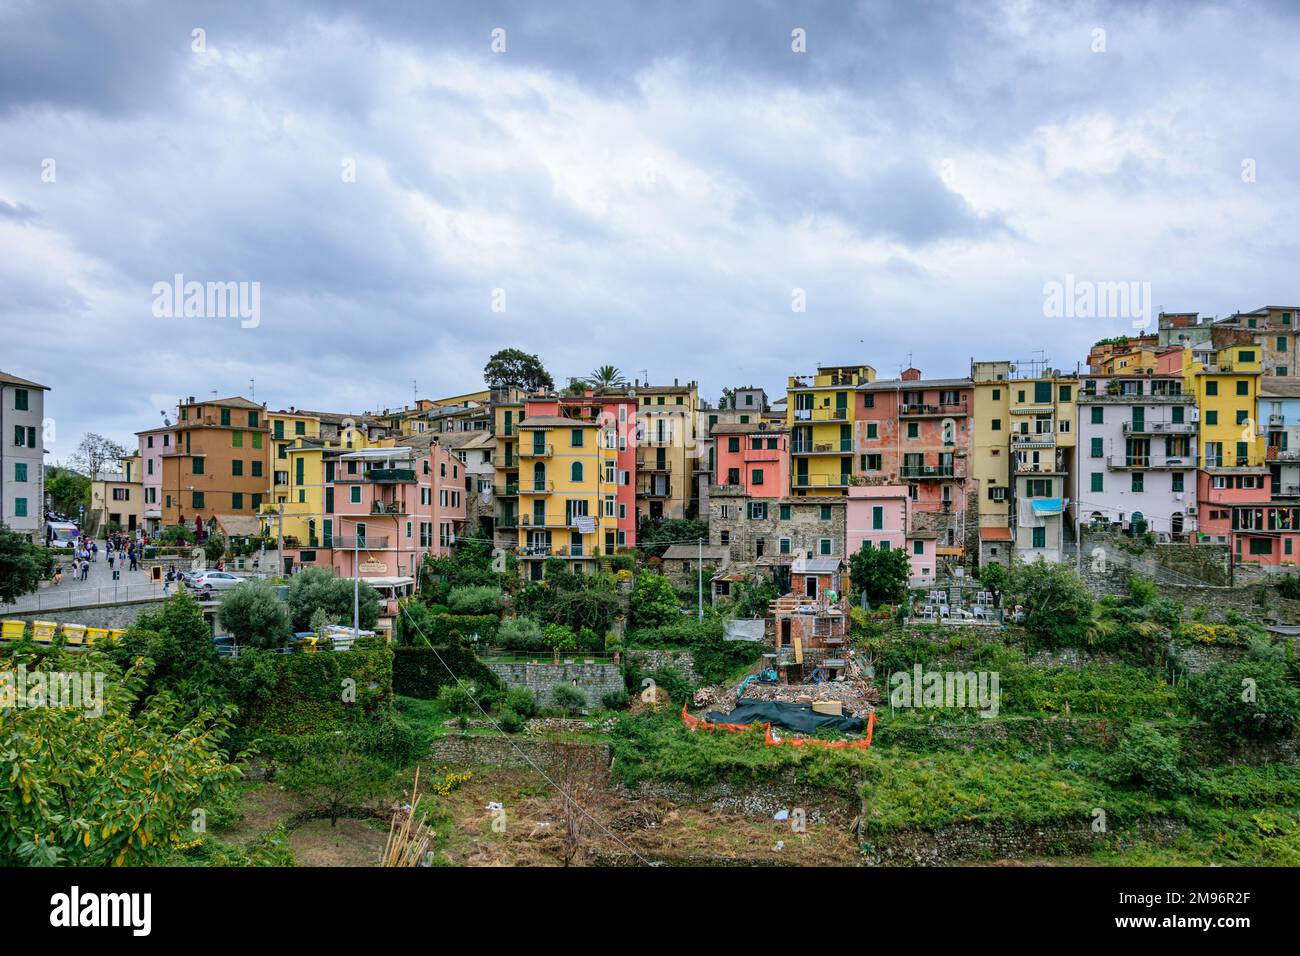 Corniglio, a cliff-top village on the Cinque Terra, Italy Stock Photo